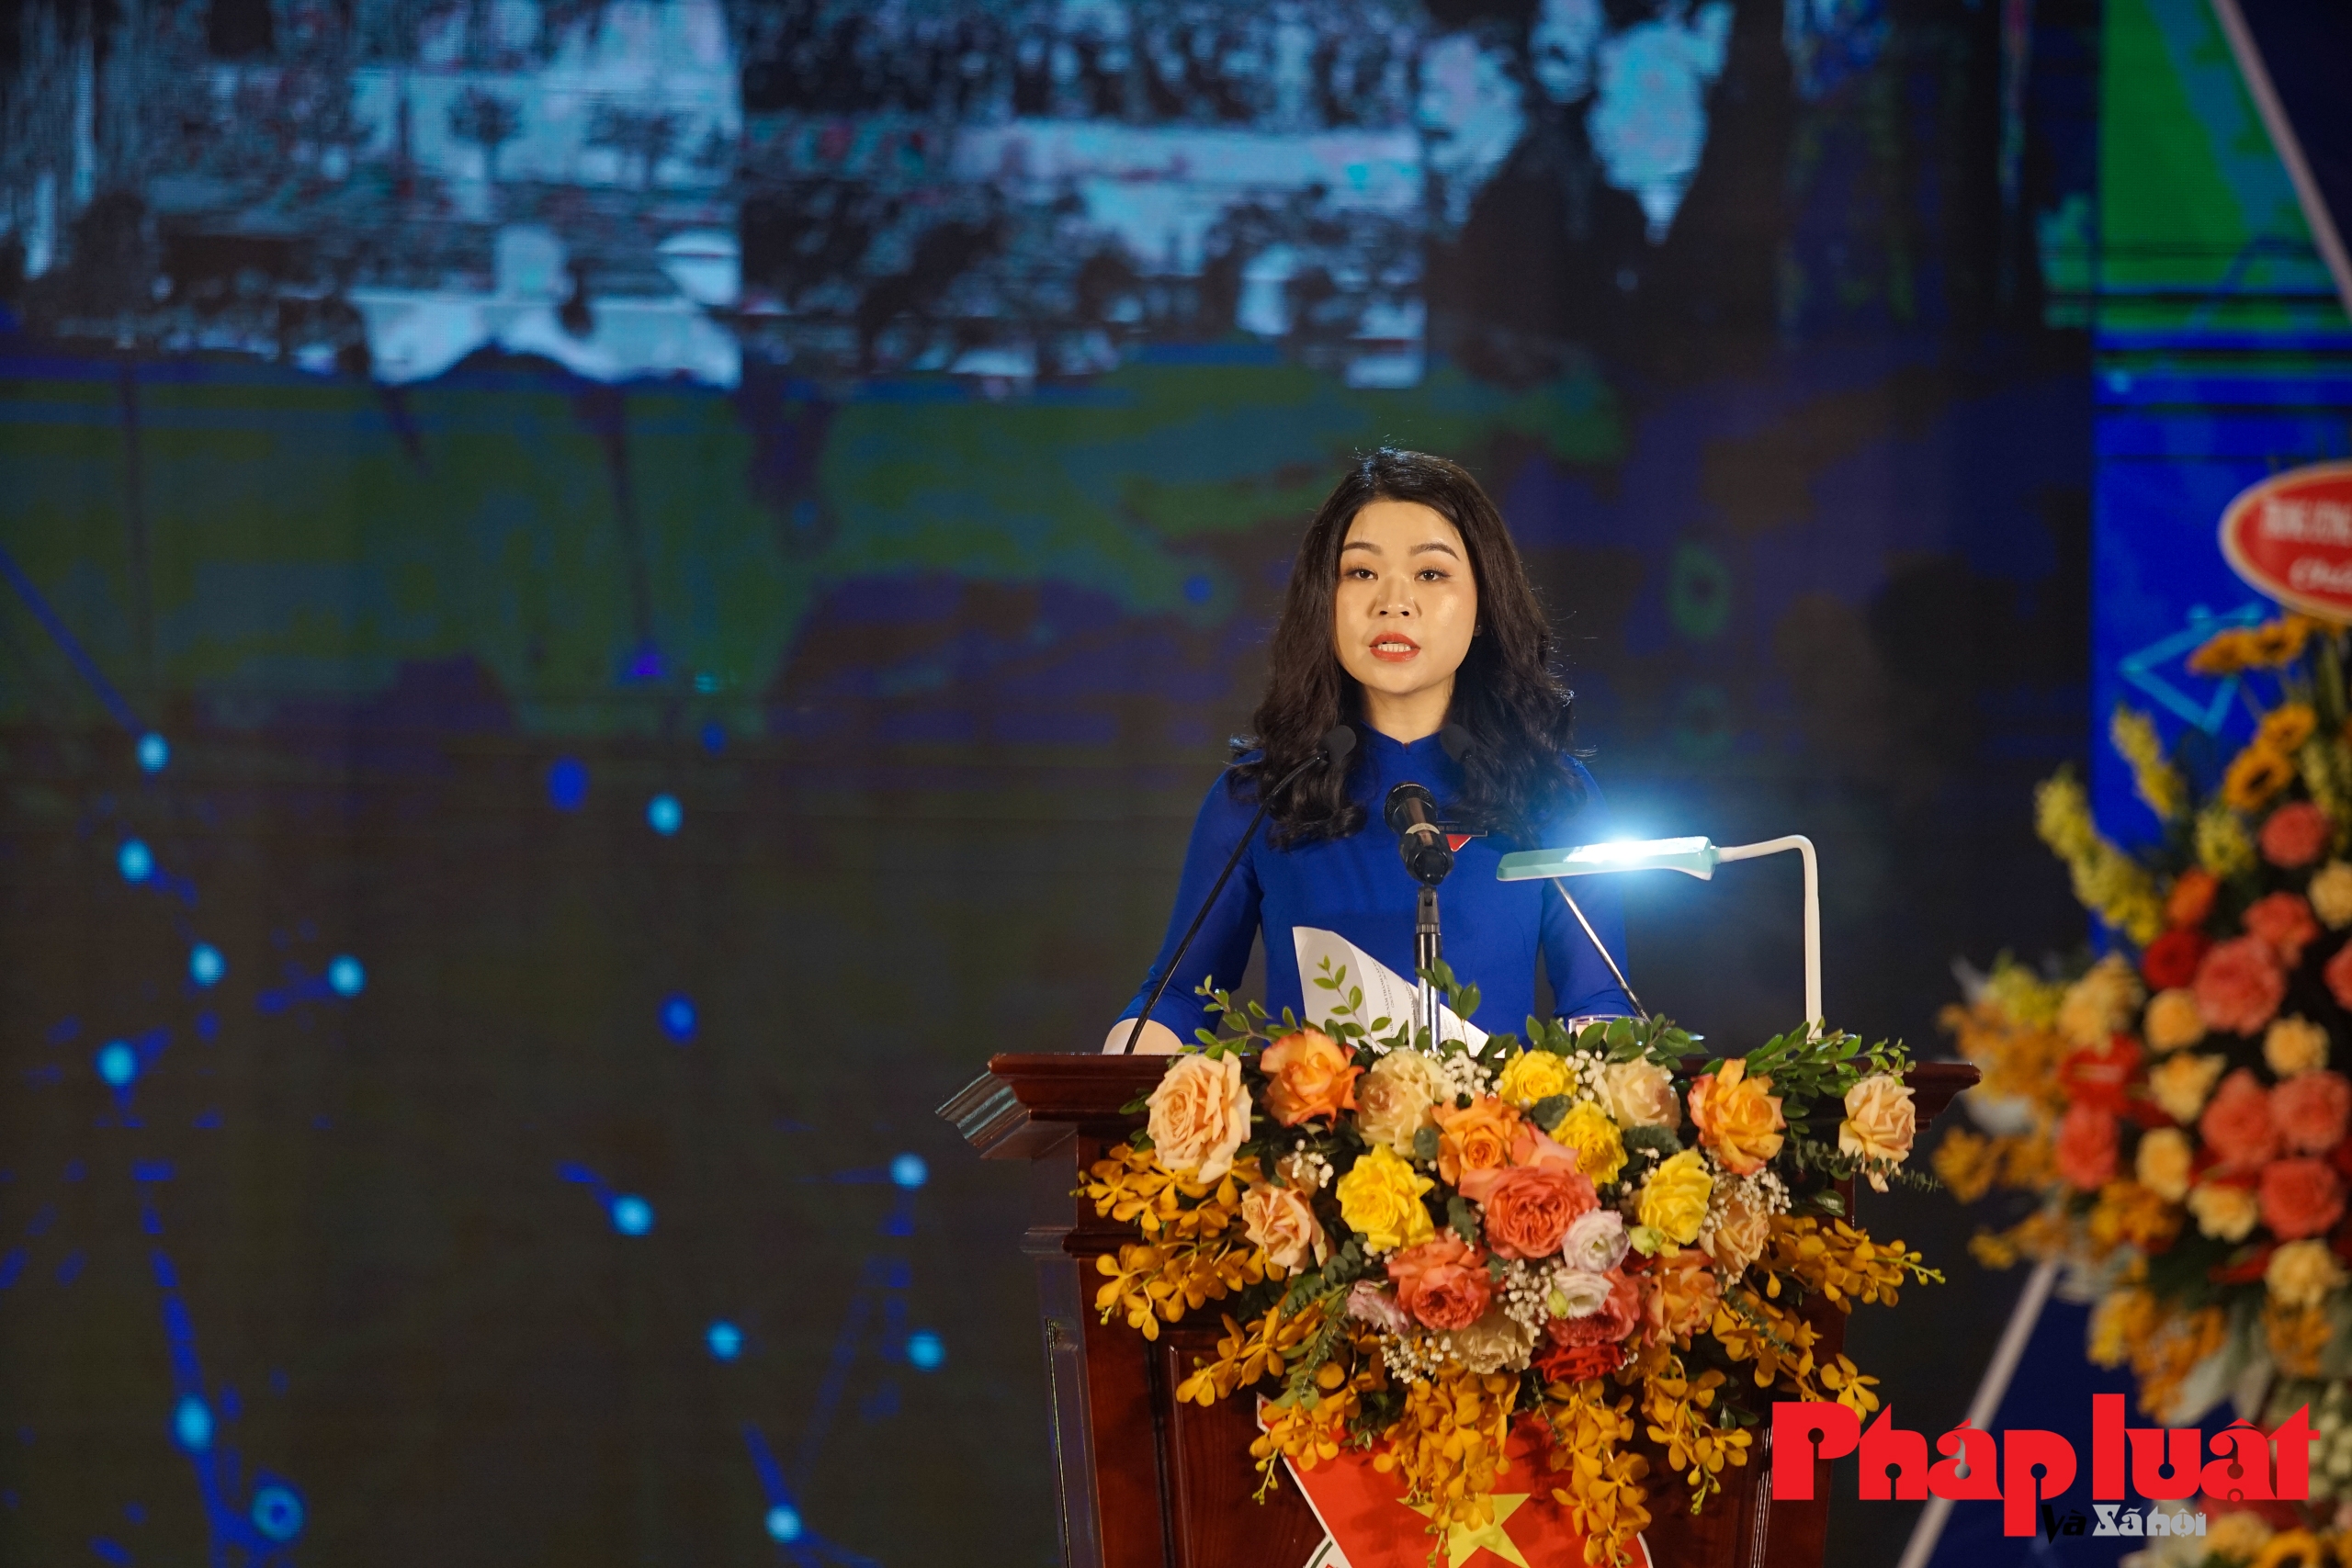 Hà Nội tuyên dương 10 Gương mặt trẻ tiêu biểu Thủ đô năm 2022